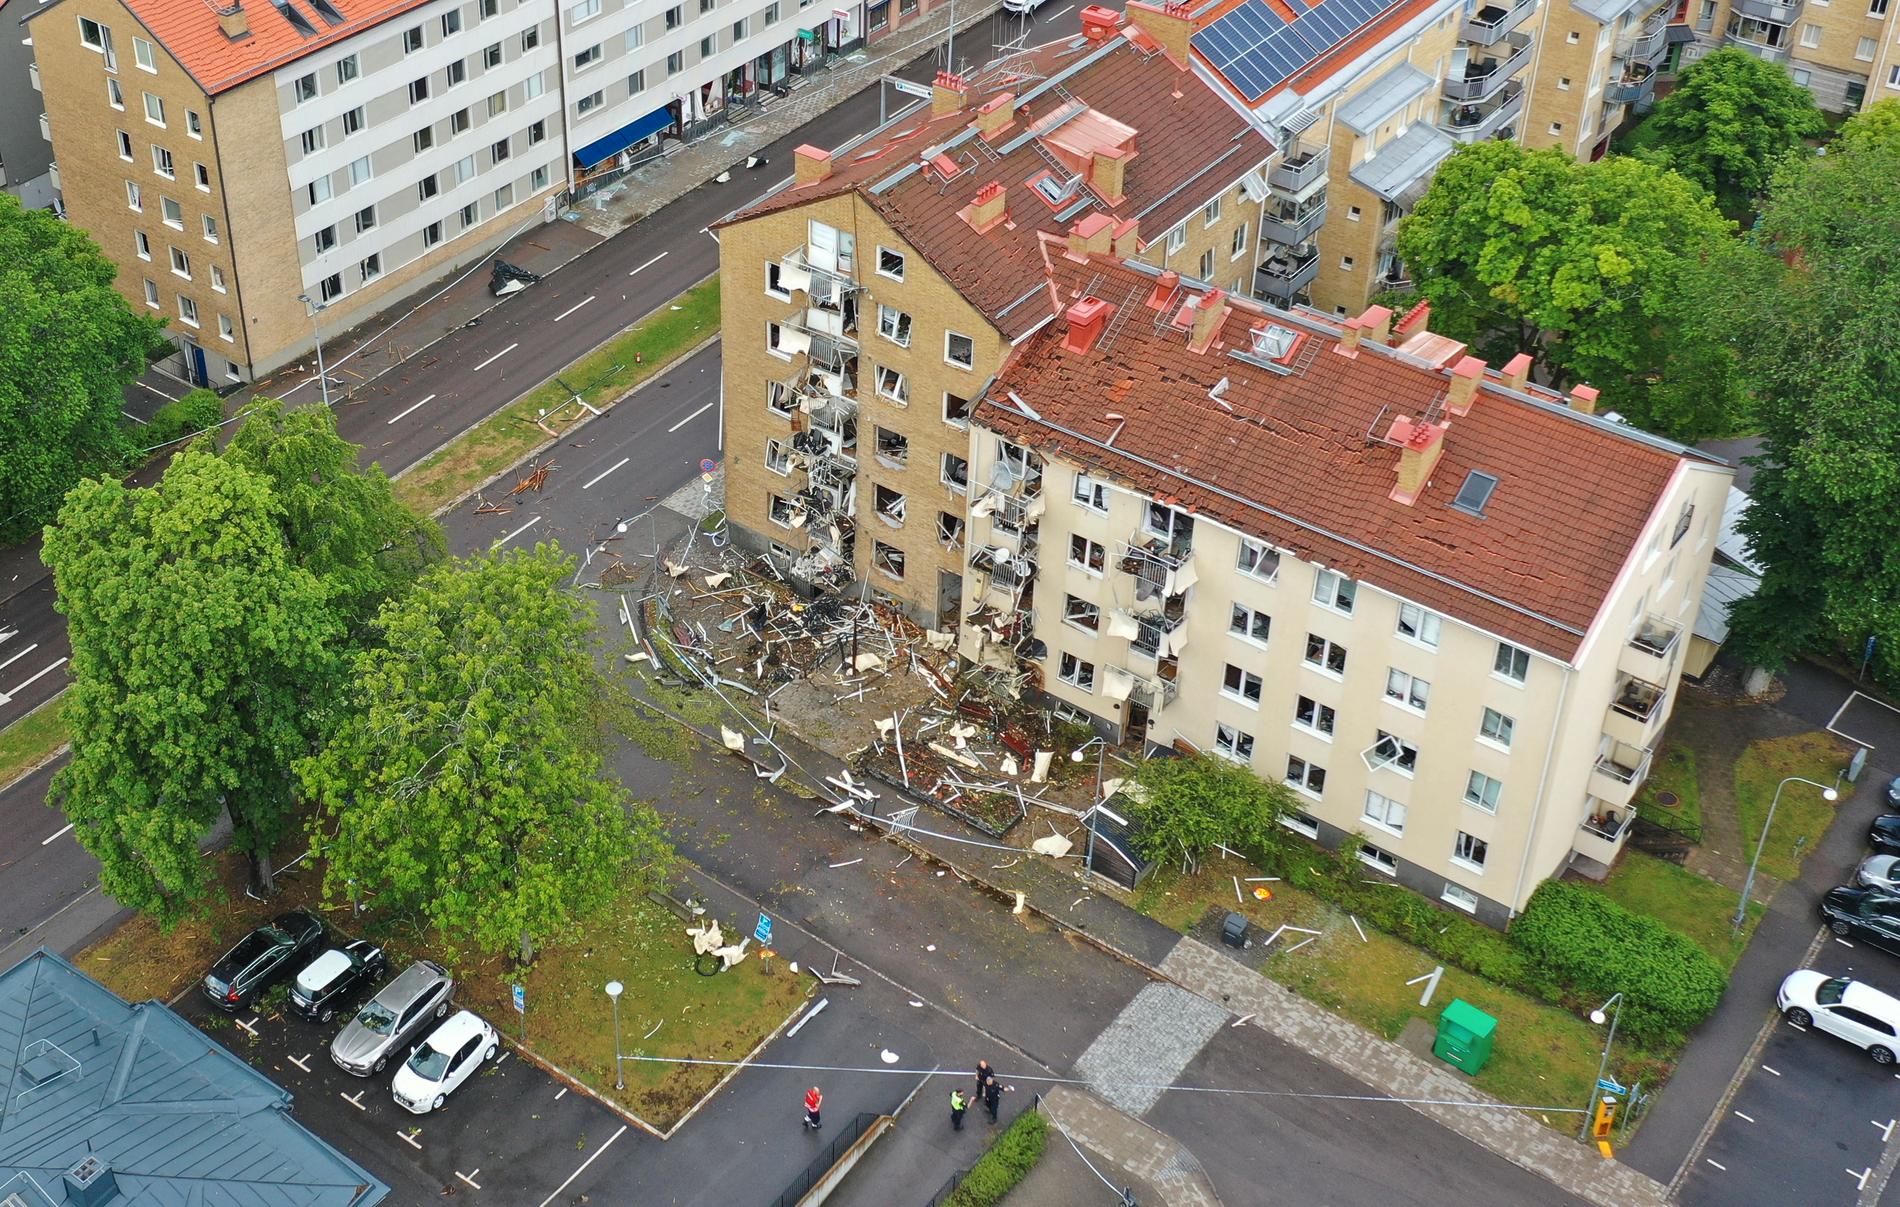 Drönarbild över de skadade husen efter den kraftiga explosionen i centrala Linköping.